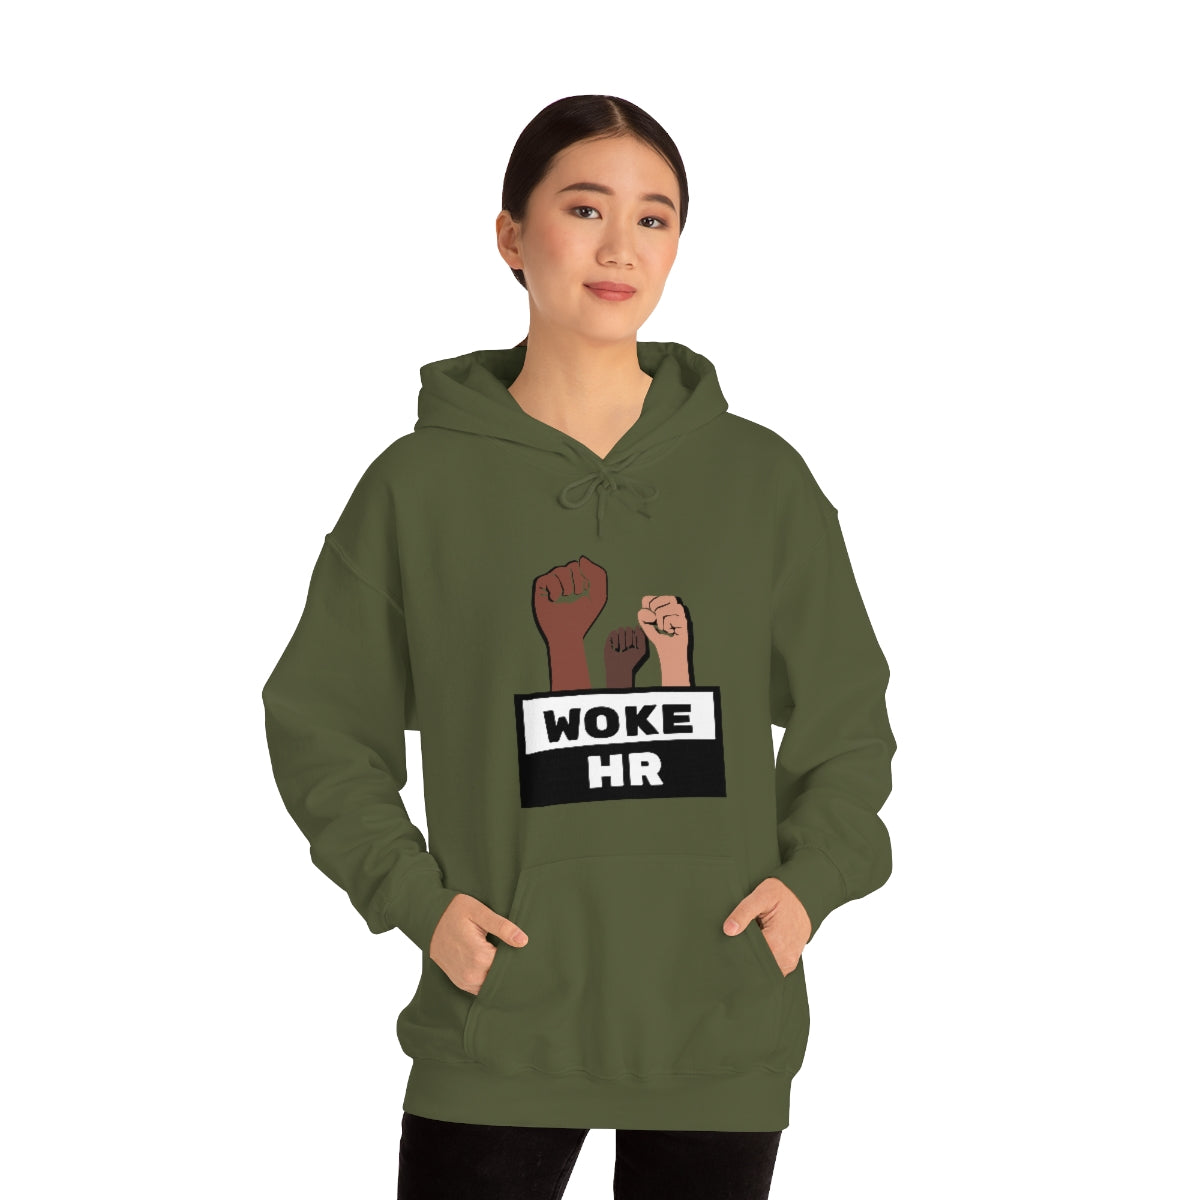 "Woke HR" Hooded Sweatshirt